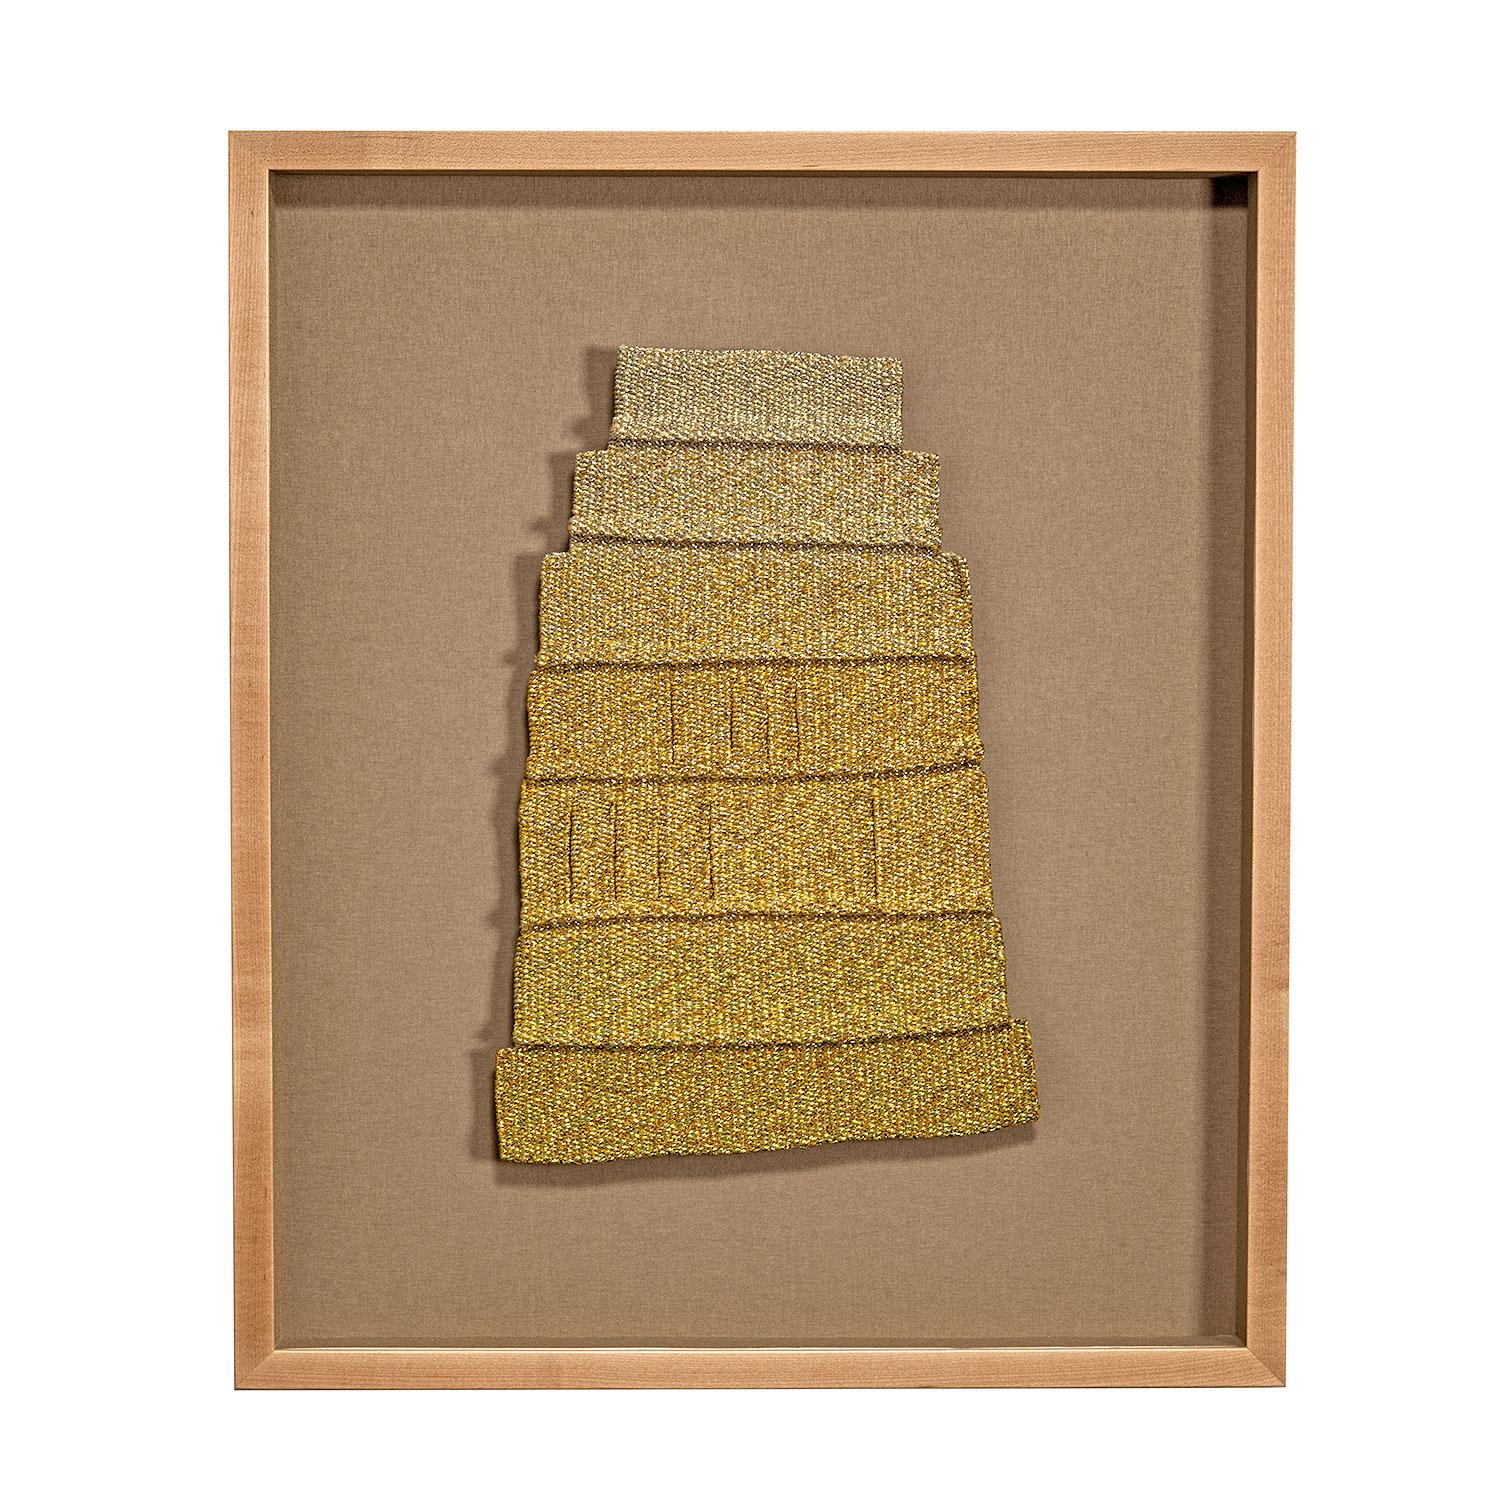 Gold Laugh (1980-85) Metall- und Acrylfaden, Baumwolle. Gold, Metallisch gewebte abstrakte Textilskulptur.
Die Textilkünstlerin Micheline Beauchemin (1929-2009) wurde in Longqueuil, Quebec, Kanada, geboren. Sie hat ein Repertoire an verschiedenen